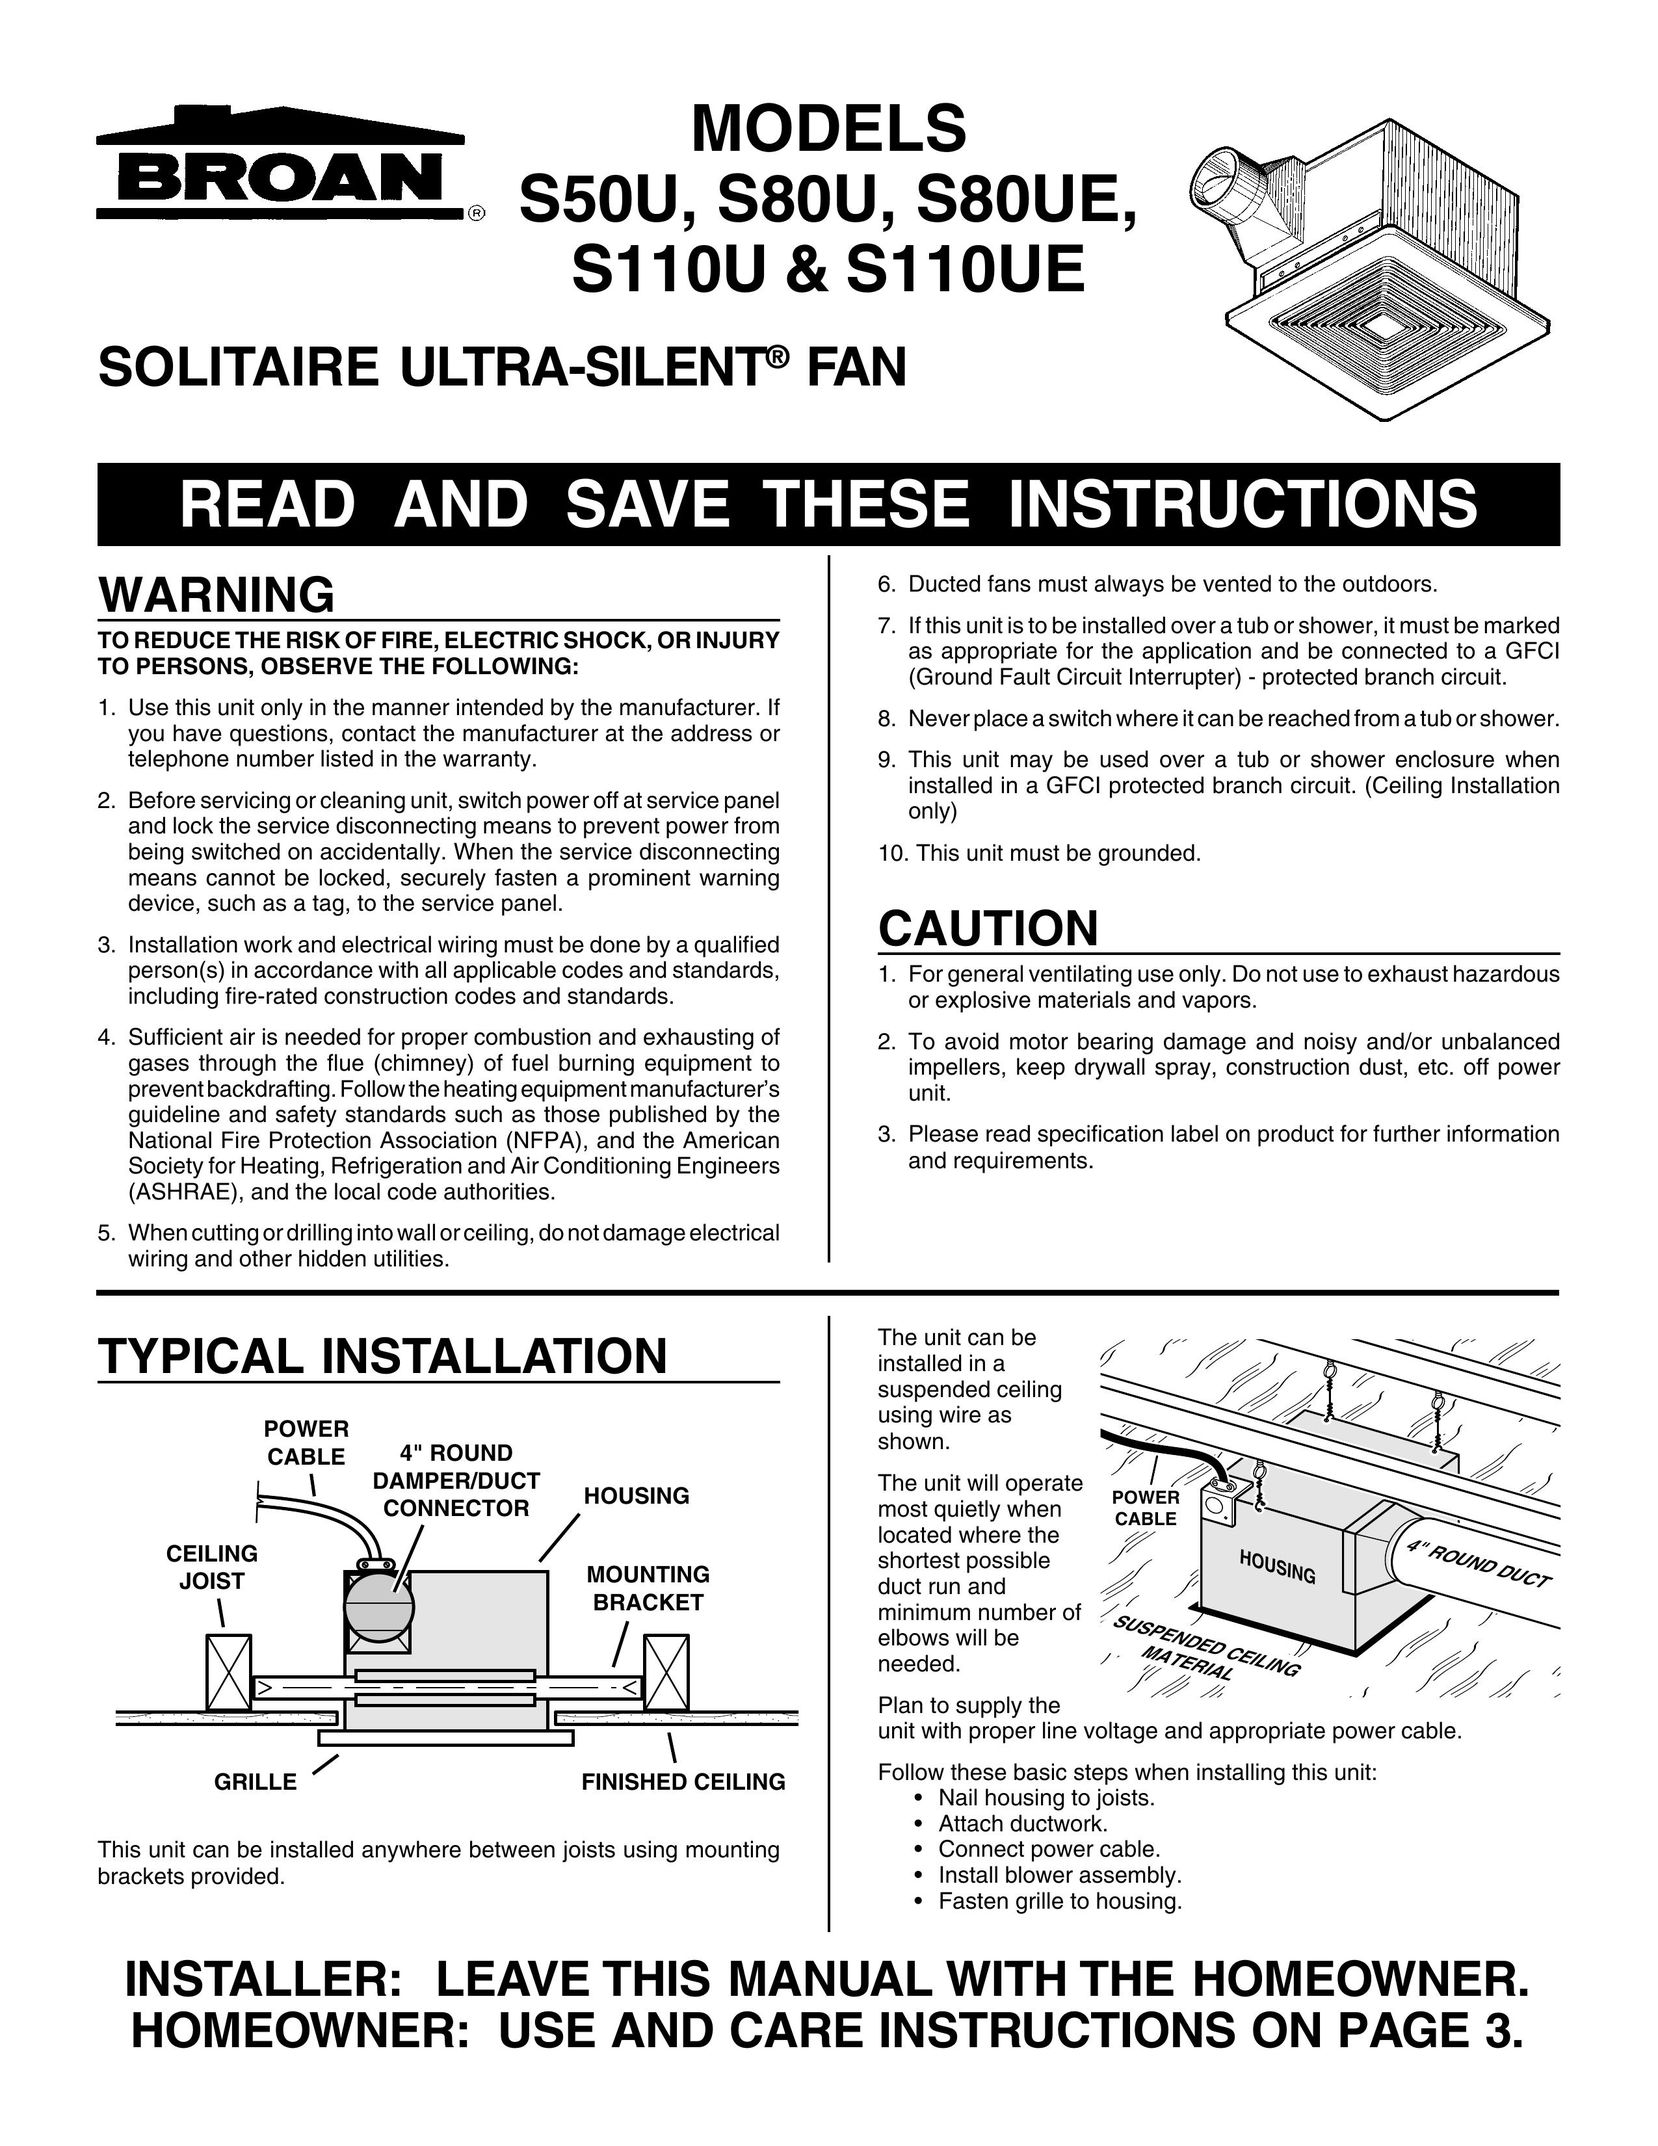 Broan S110UE Fan User Manual